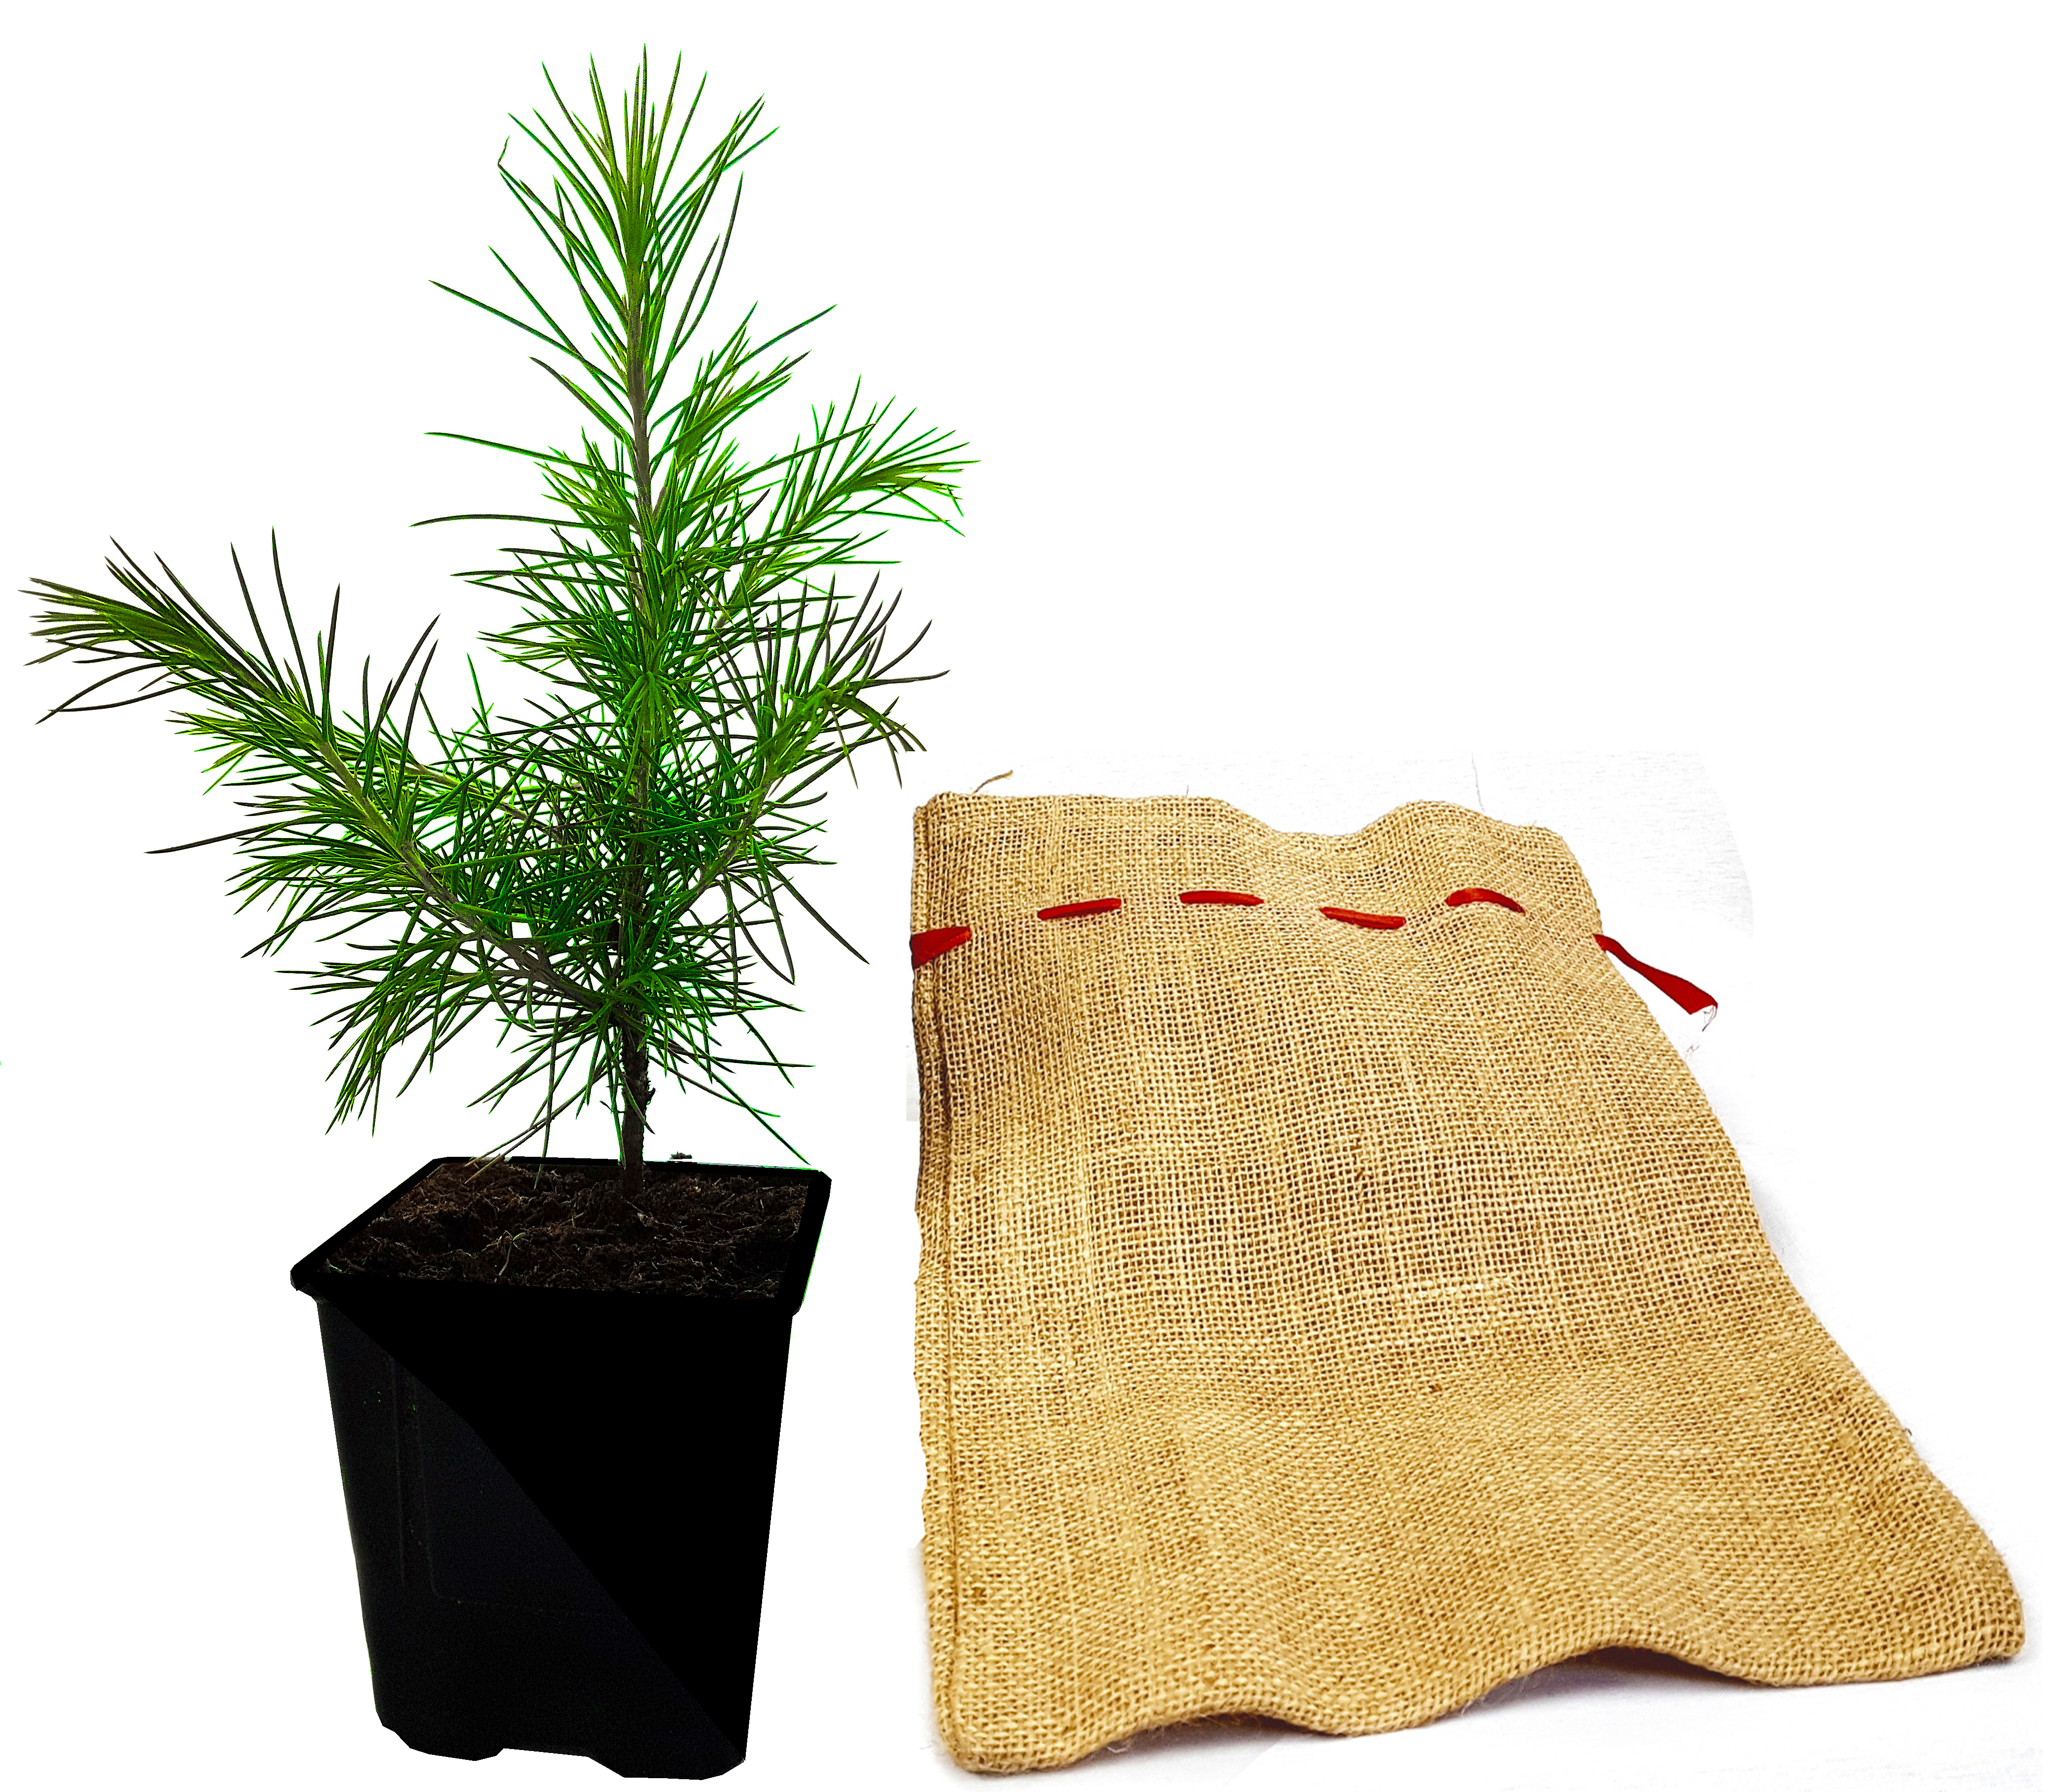 Seedeo® Himalaja-Zeder (Cedrus deodara) Pflanze 2 Jahre Geschenkedition Topf mit Sternen